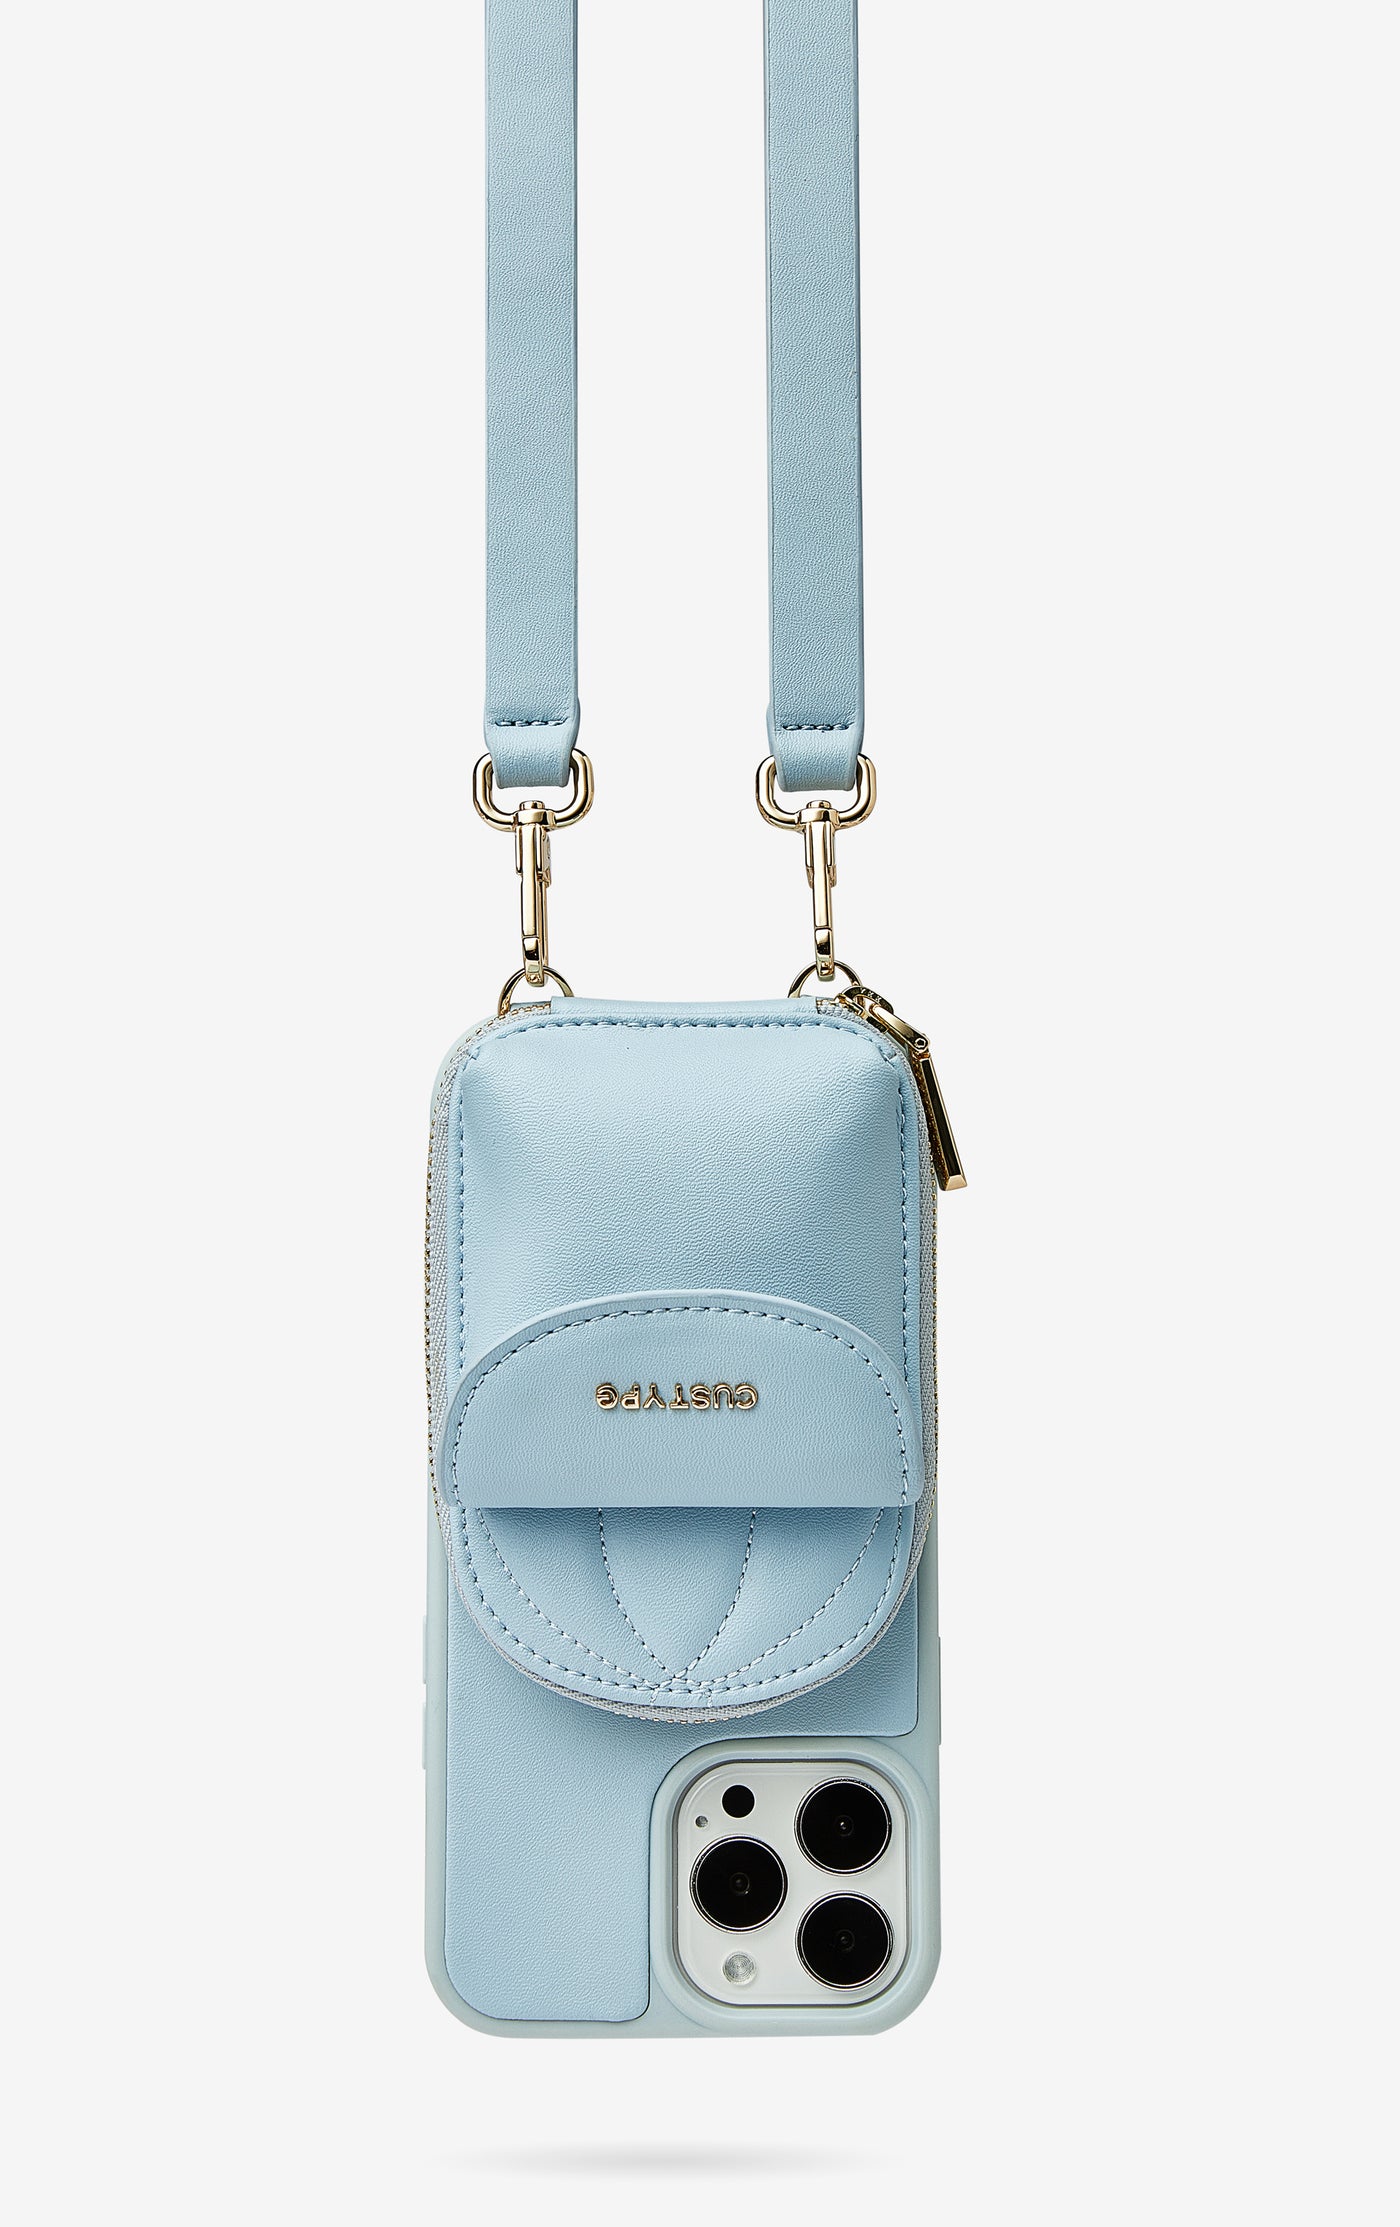 Unique basketball Cap Phone Case iPhone Cover Case Wallet Pouch Blue